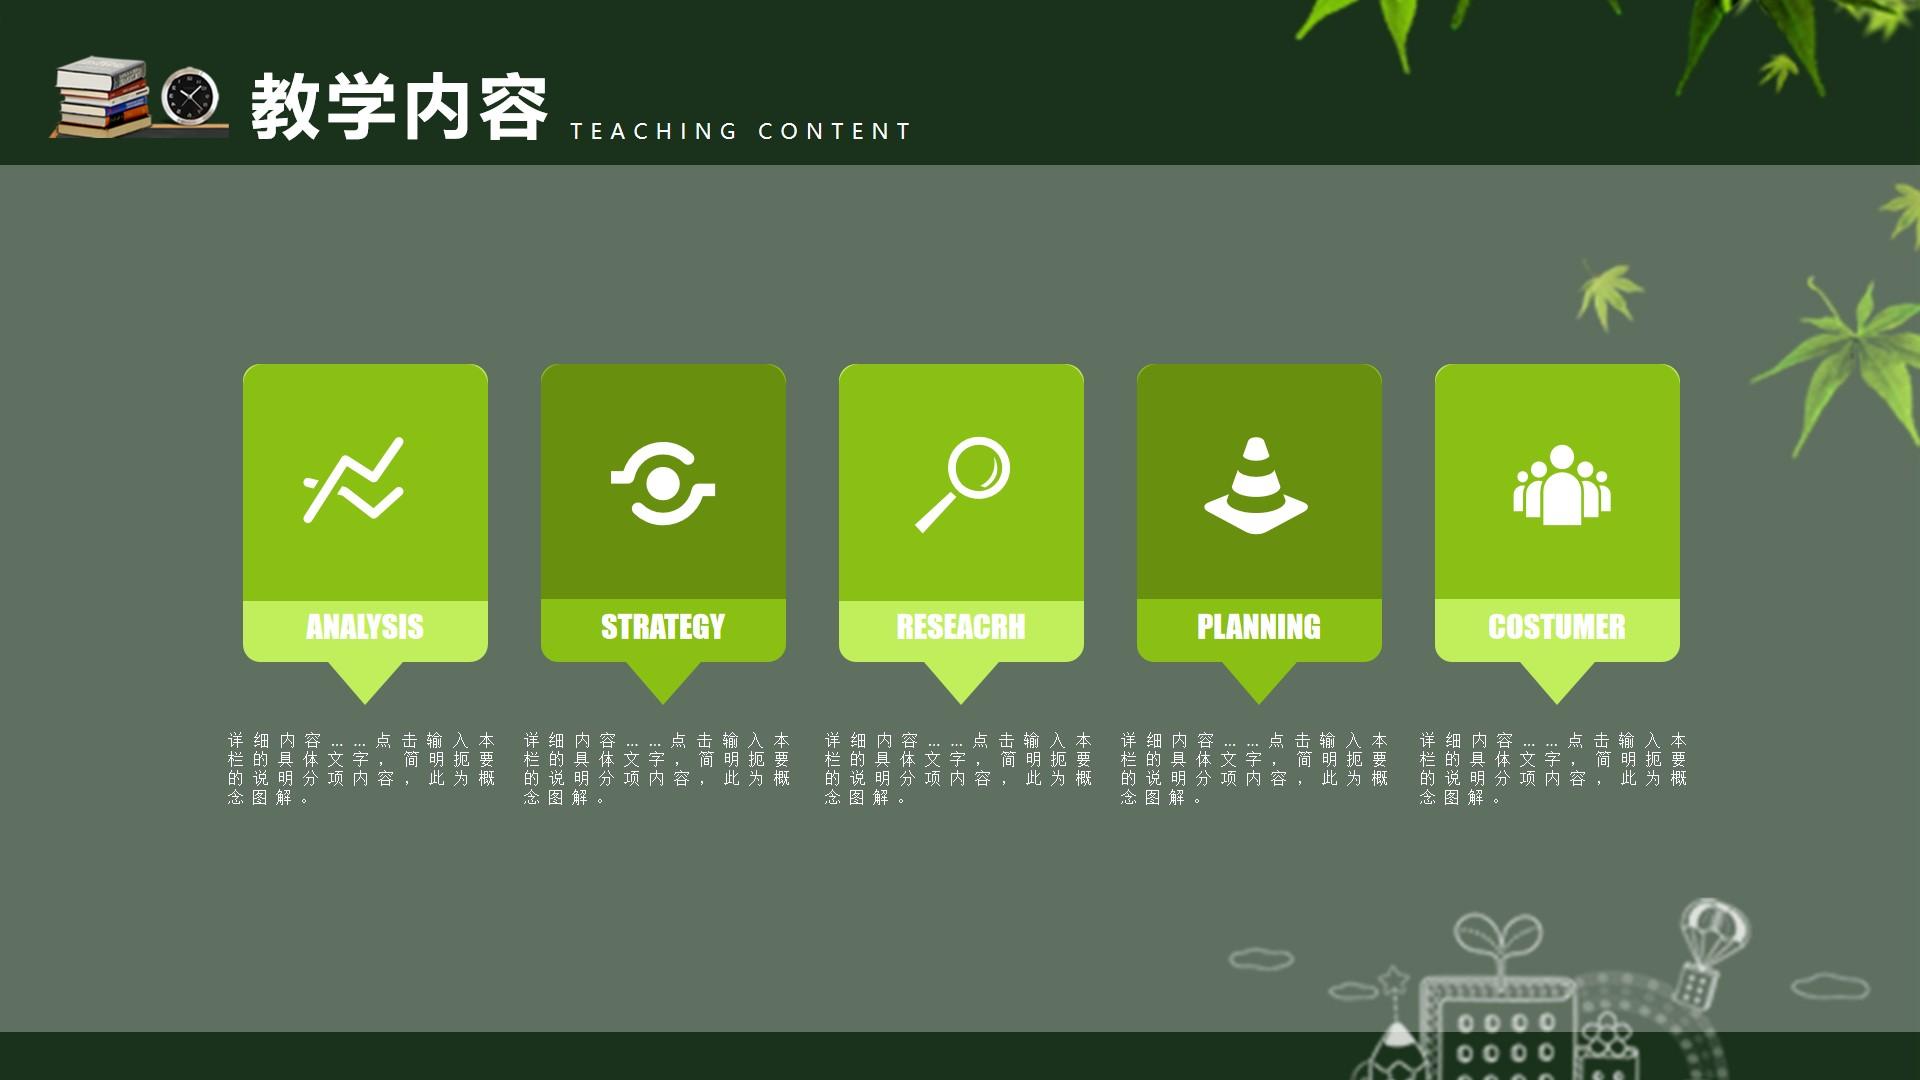 教育教学绿色白色实景卡通content 概念 teaching 图解云素材PPT模板1672664046183